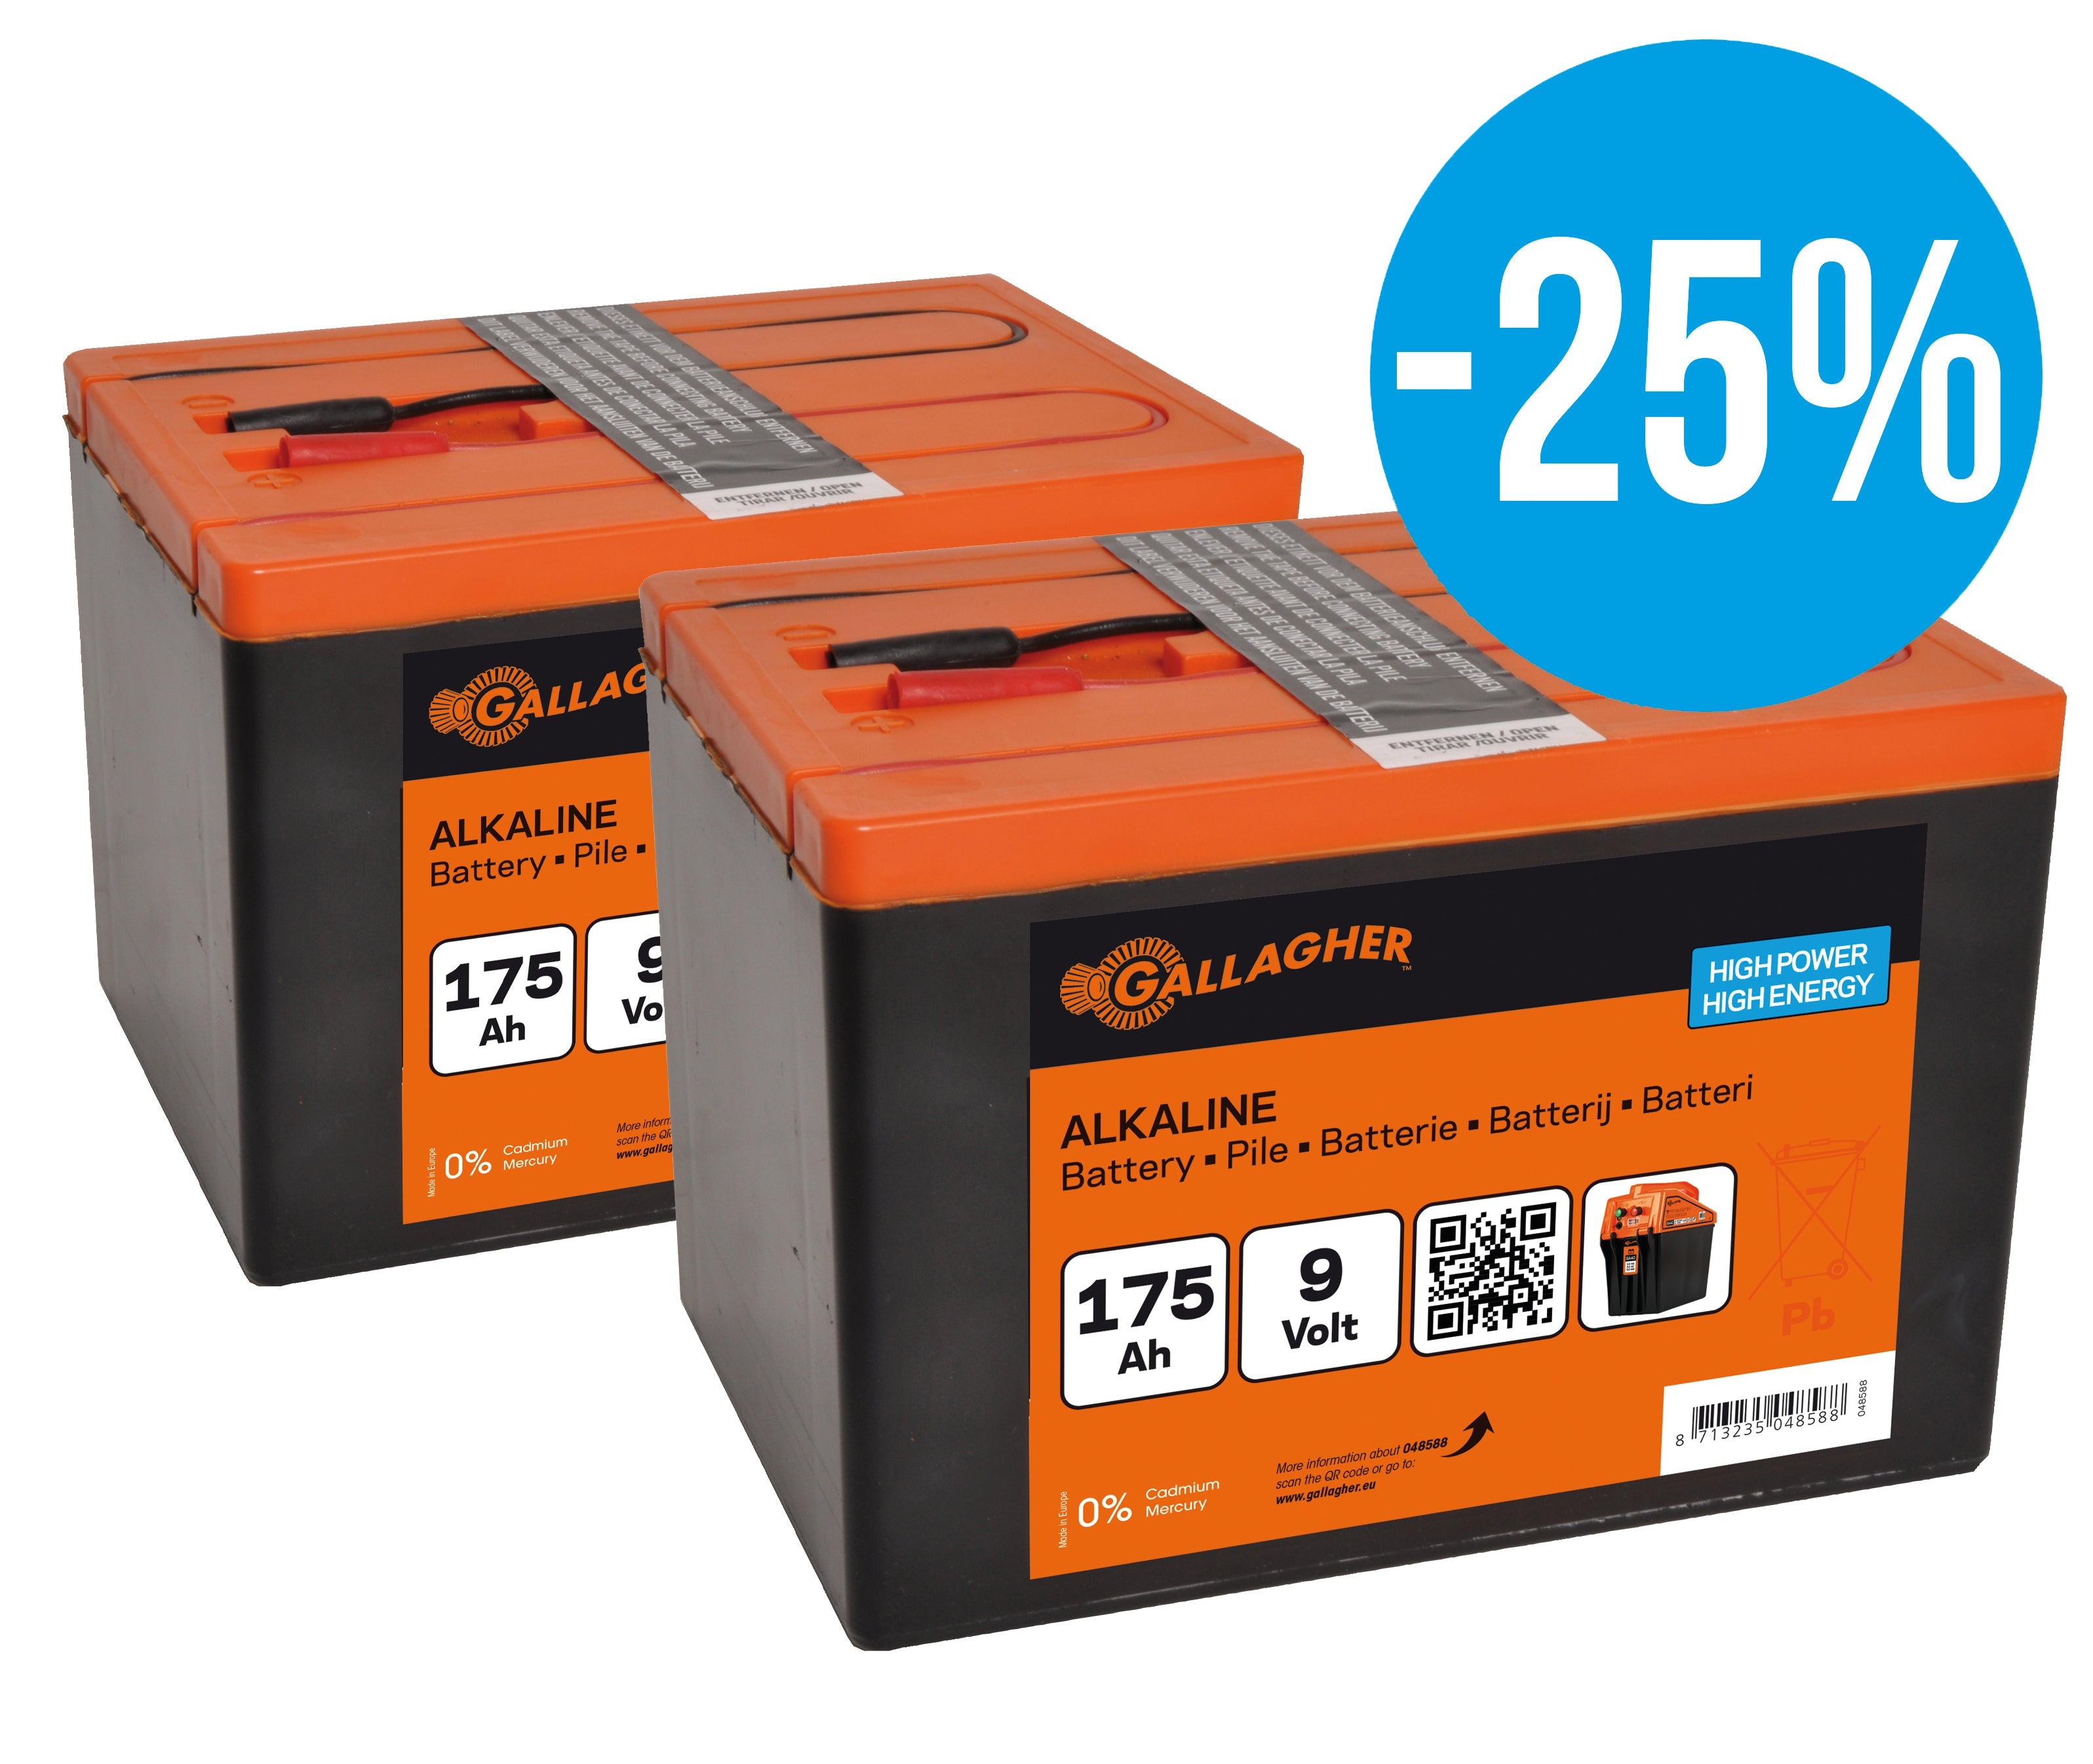 Duopack Alkaline battery 2x 9V/175Ah - 190x125x160mm